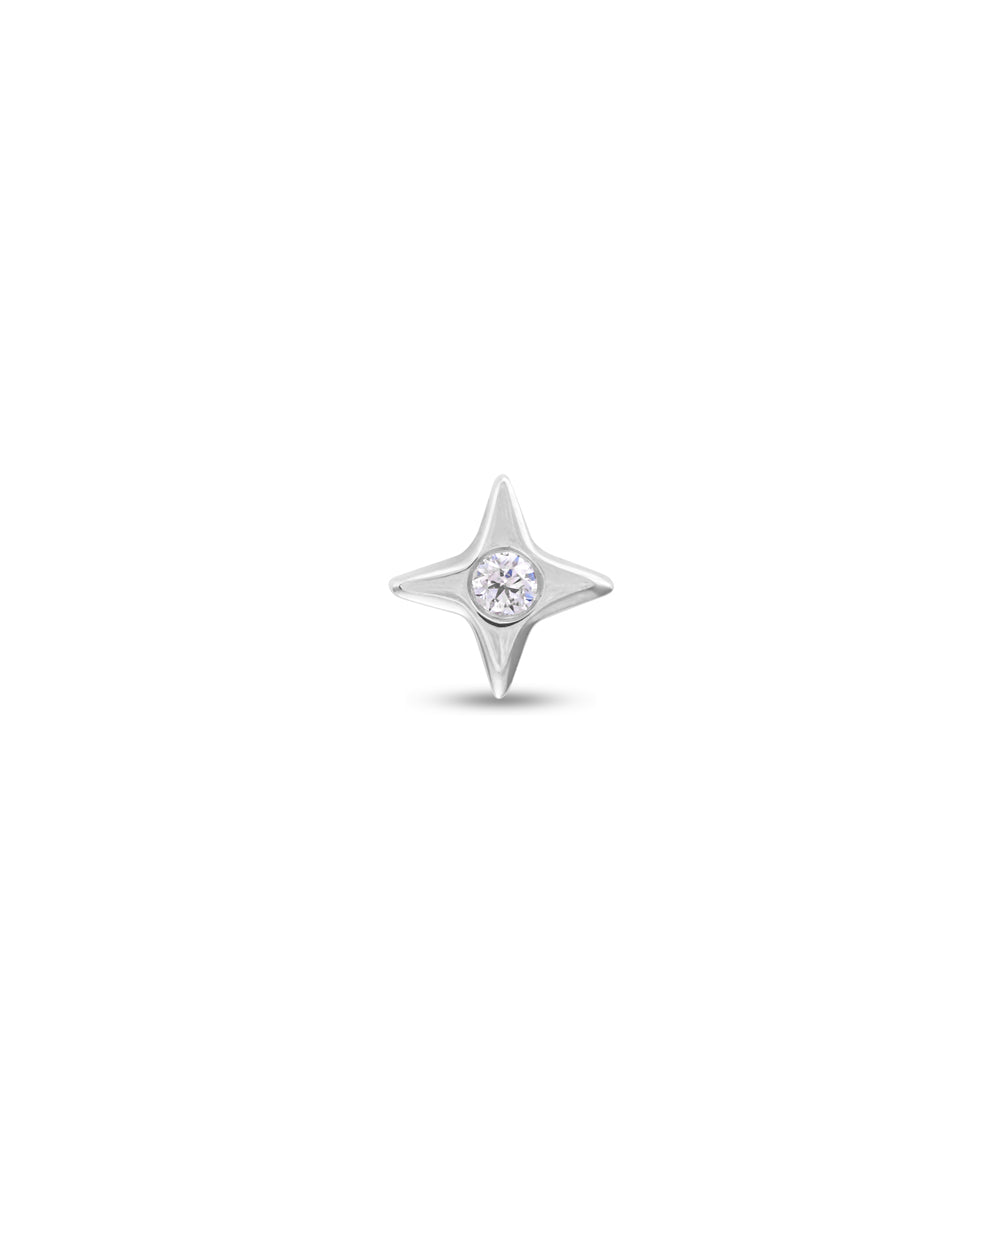 Covetear Starlight Diamond Cartilage Earring#material_14k_White_Gold